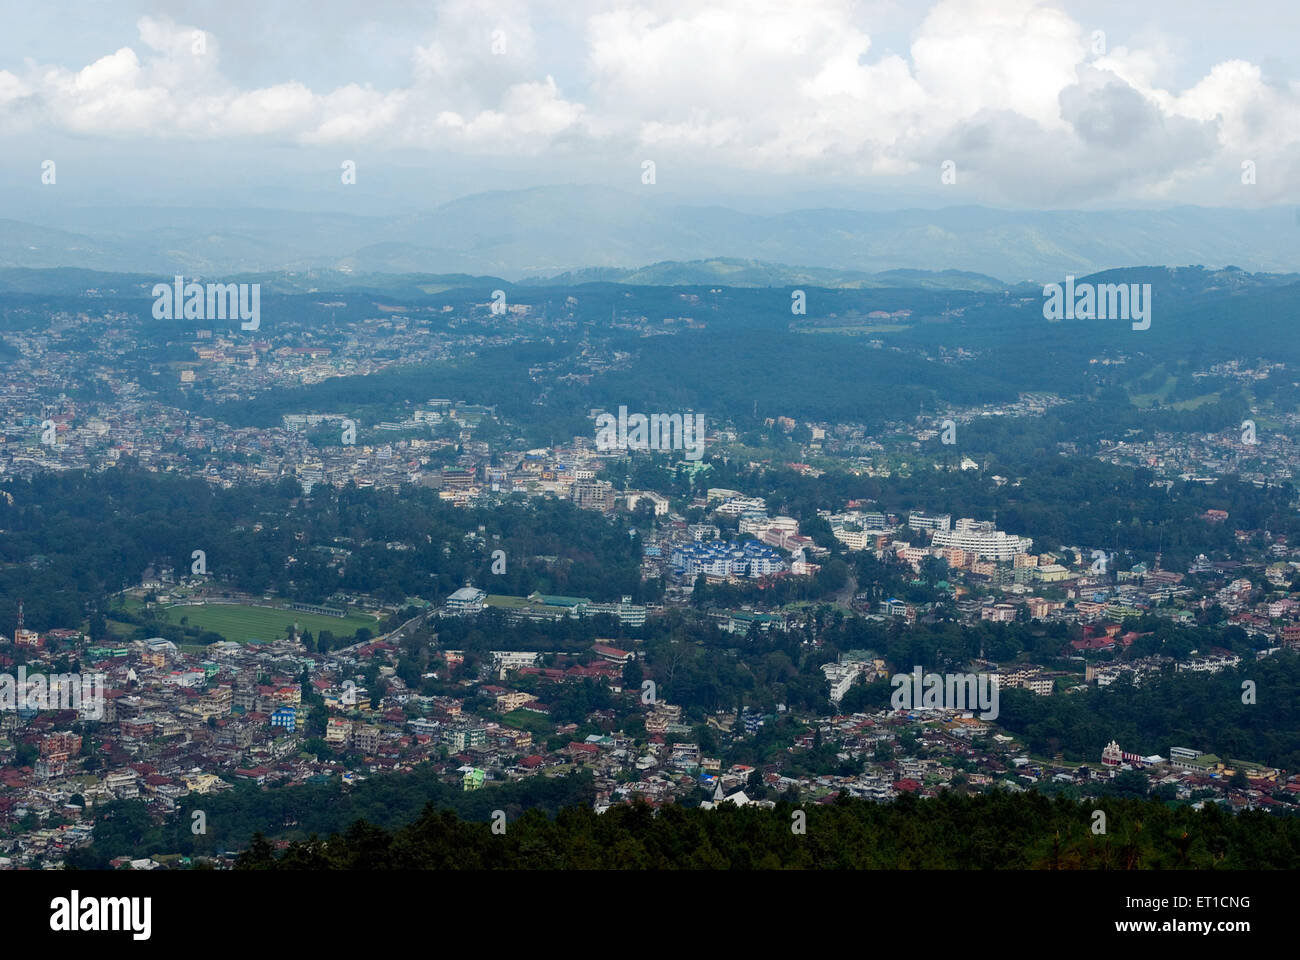 Vue de la ville de Shillong ; ; ; Inde Meghalaya Shillong Banque D'Images